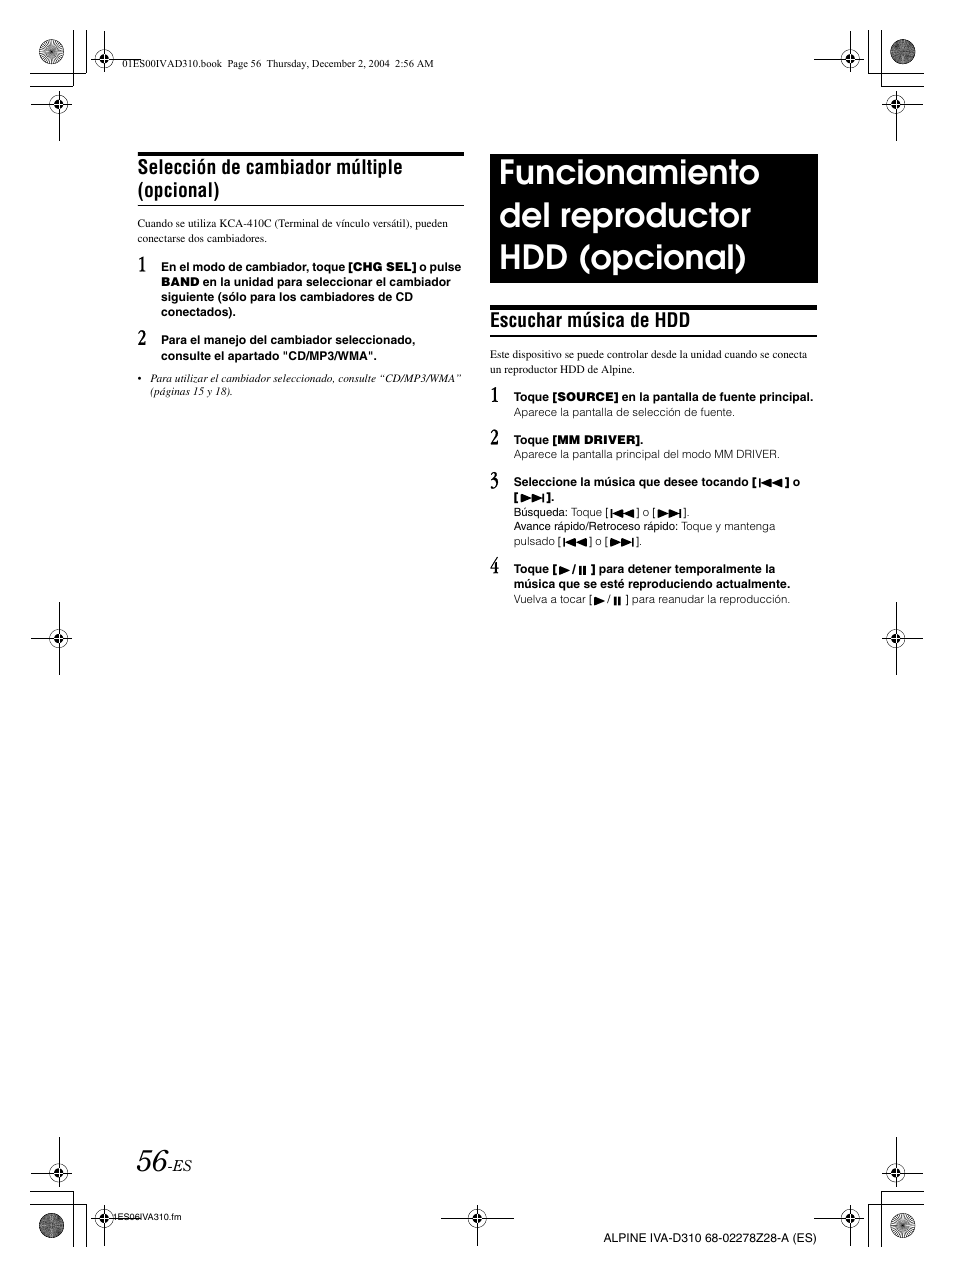 Funcionamiento del reproductor hdd (opcional), Selección de cambiador  múltiple (opcional), Escuchar música de hdd | Alpine IVA-D310 User Manual |  Page 226 / 253 | Original mode